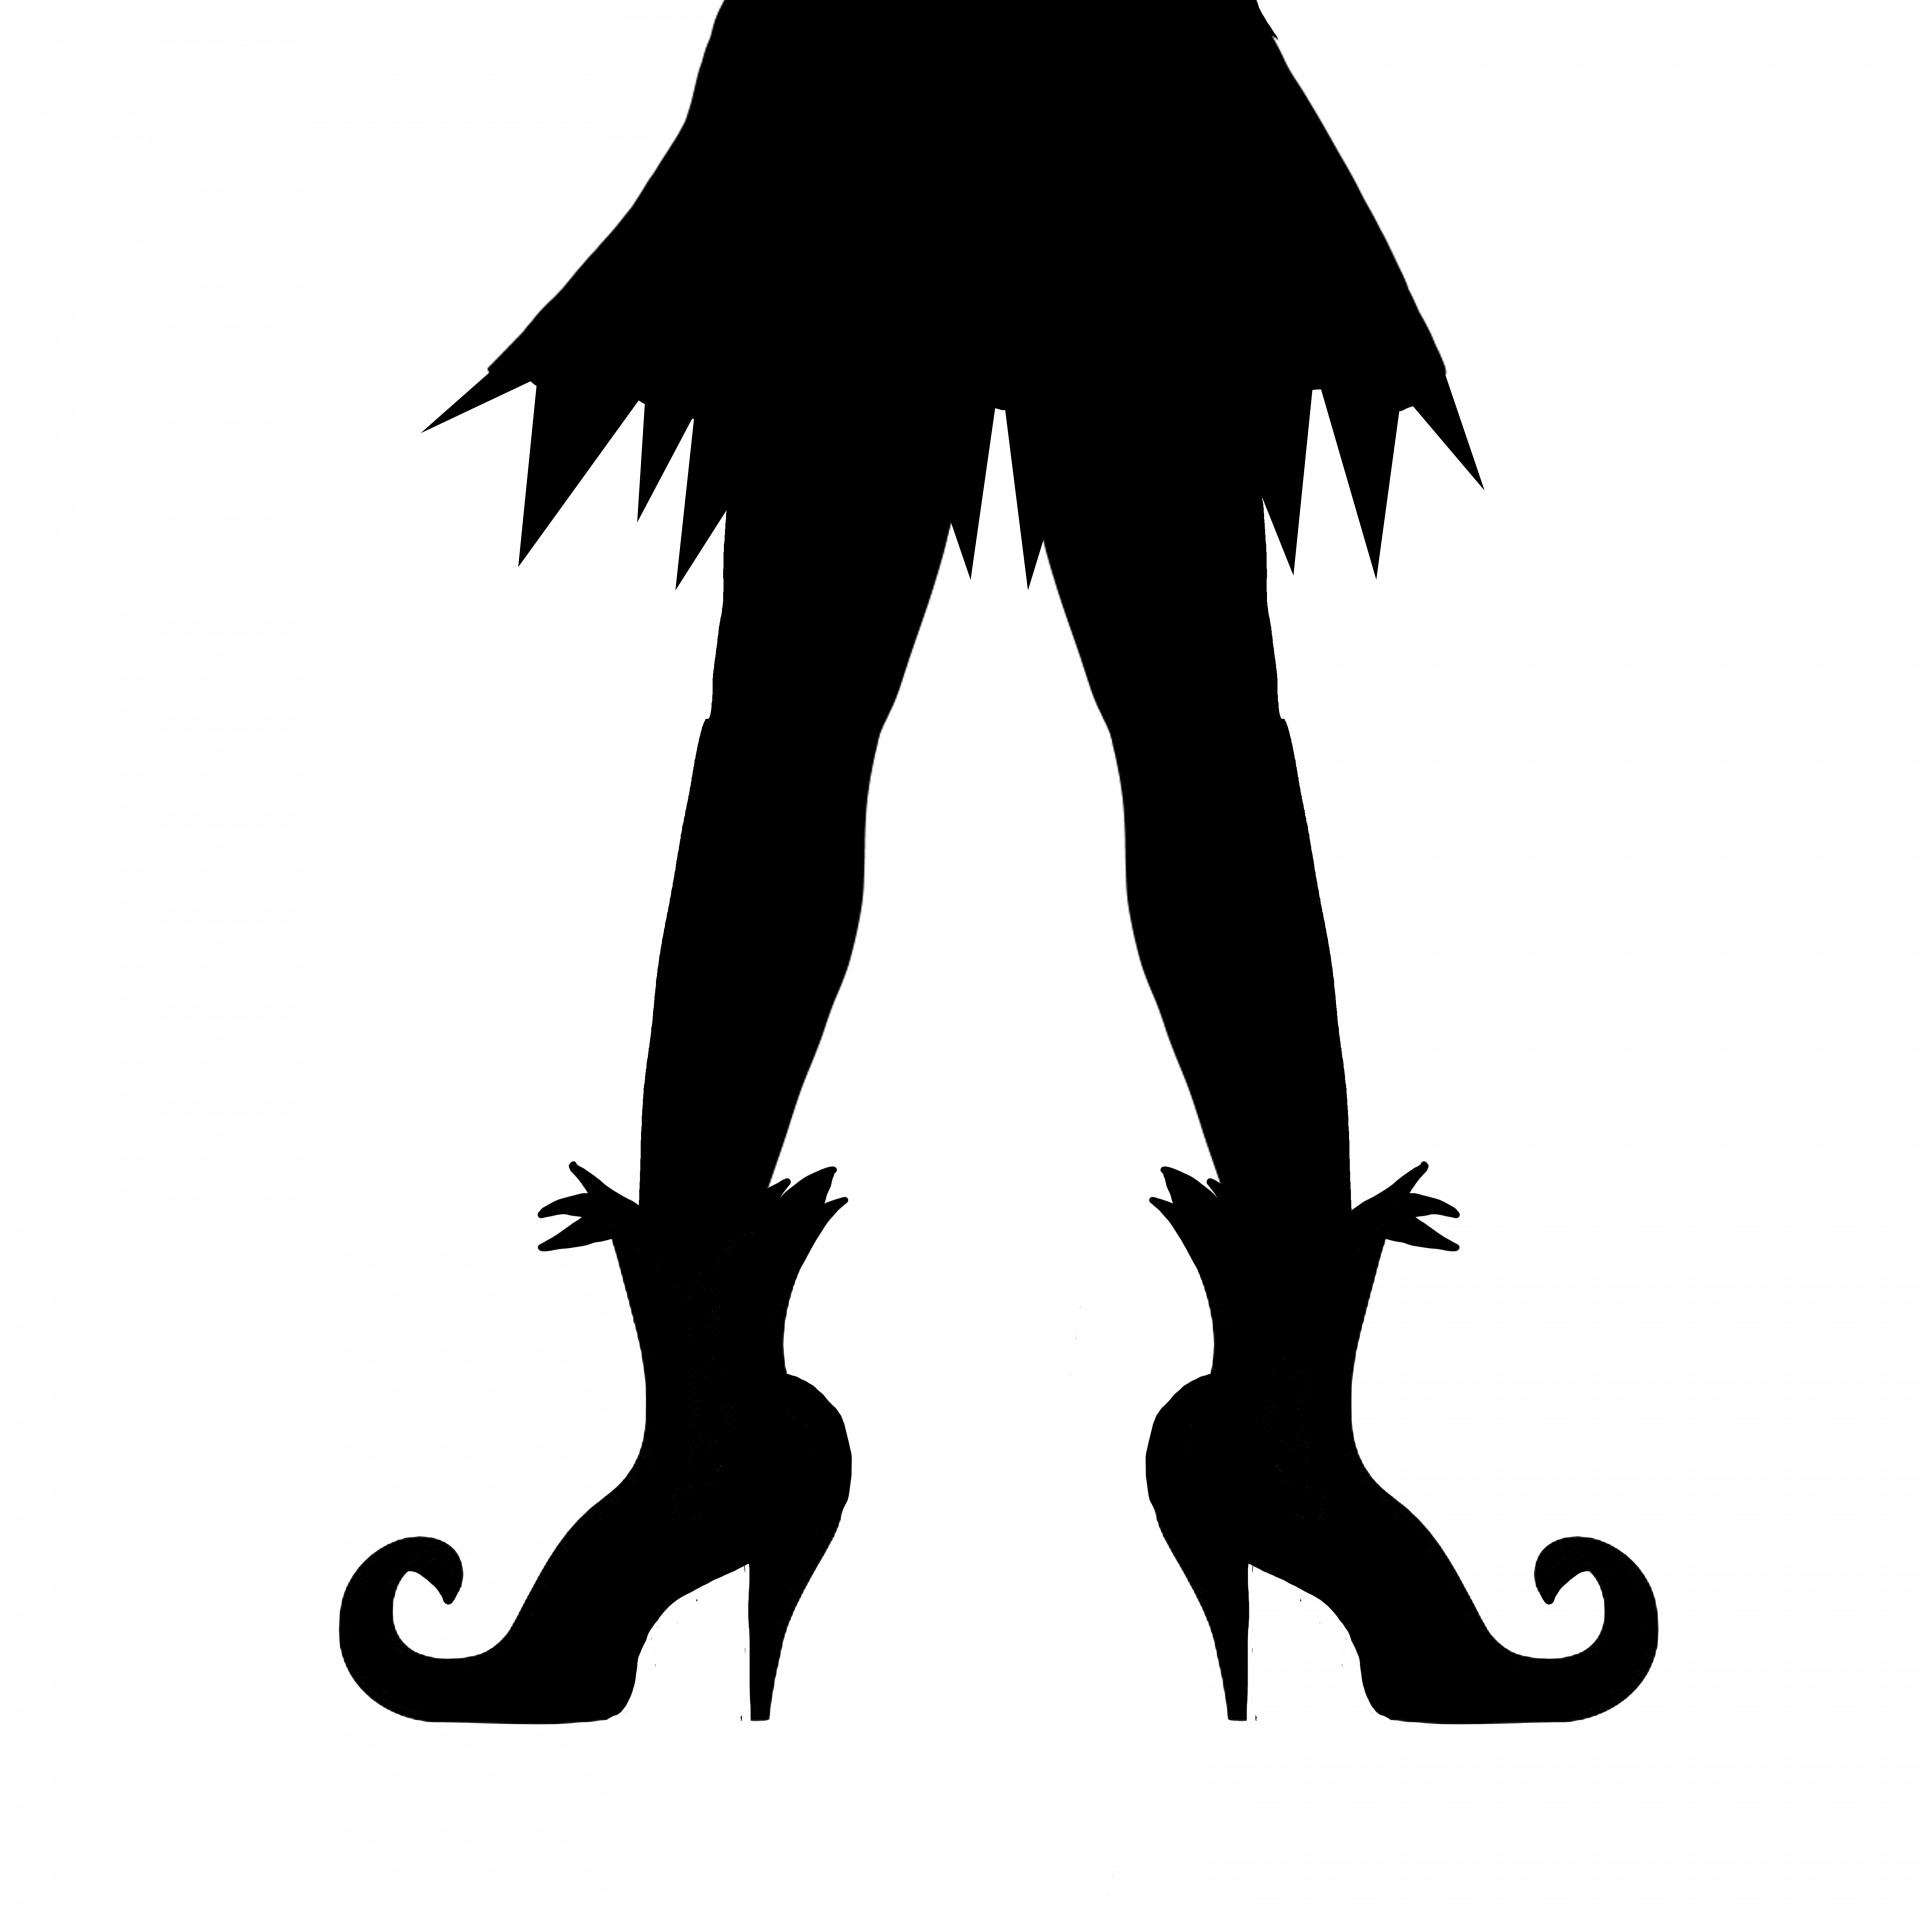 witches legs halloween silhouette leg legs free photo